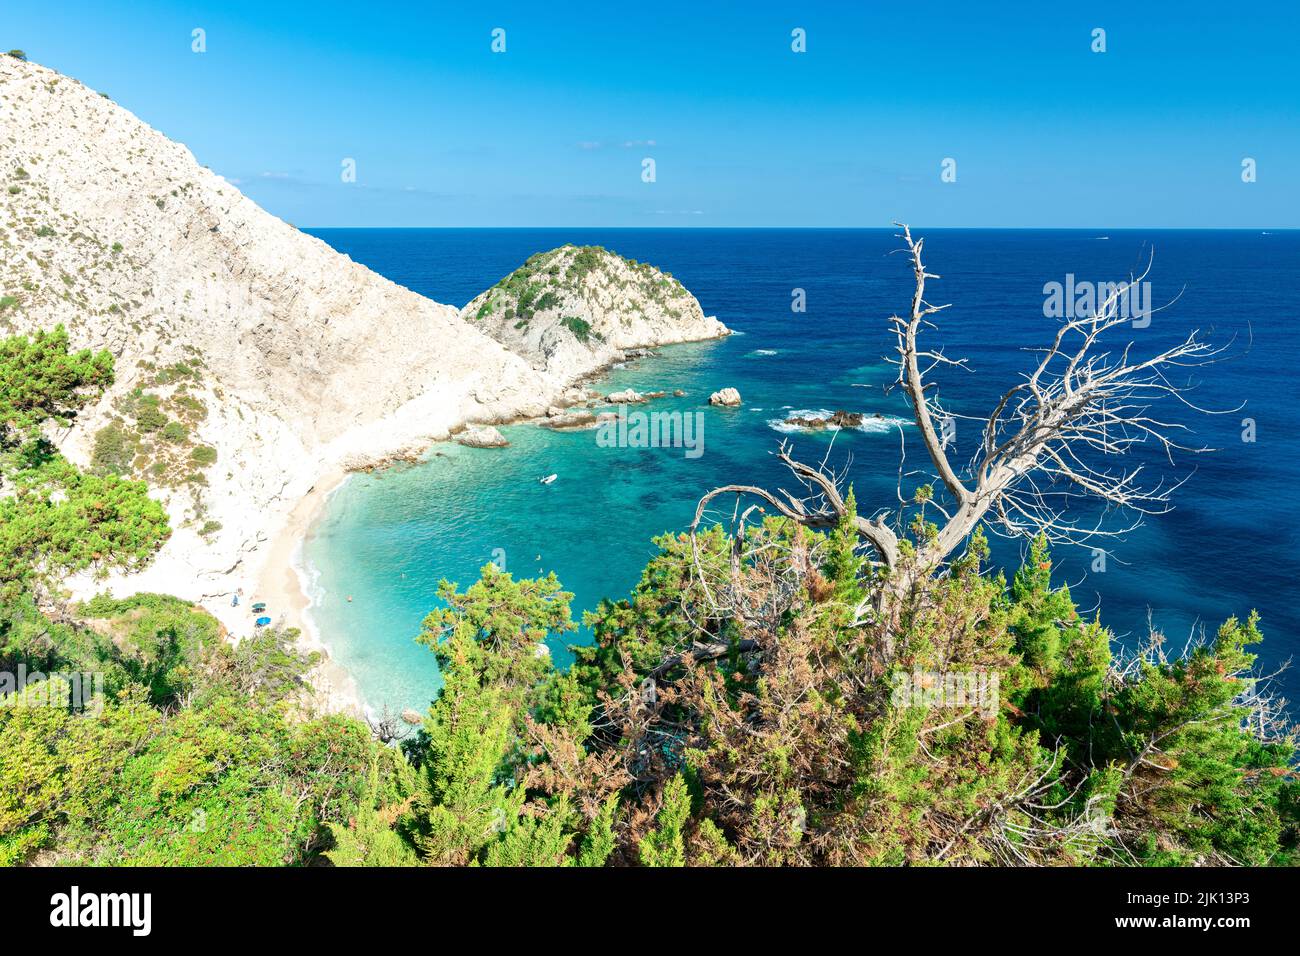 Vue panoramique sur la plage idyllique d'Agia Eleni et les falaises, Kefalonia, Iles Ioniennes, Iles grecques, Grèce, Europe Banque D'Images